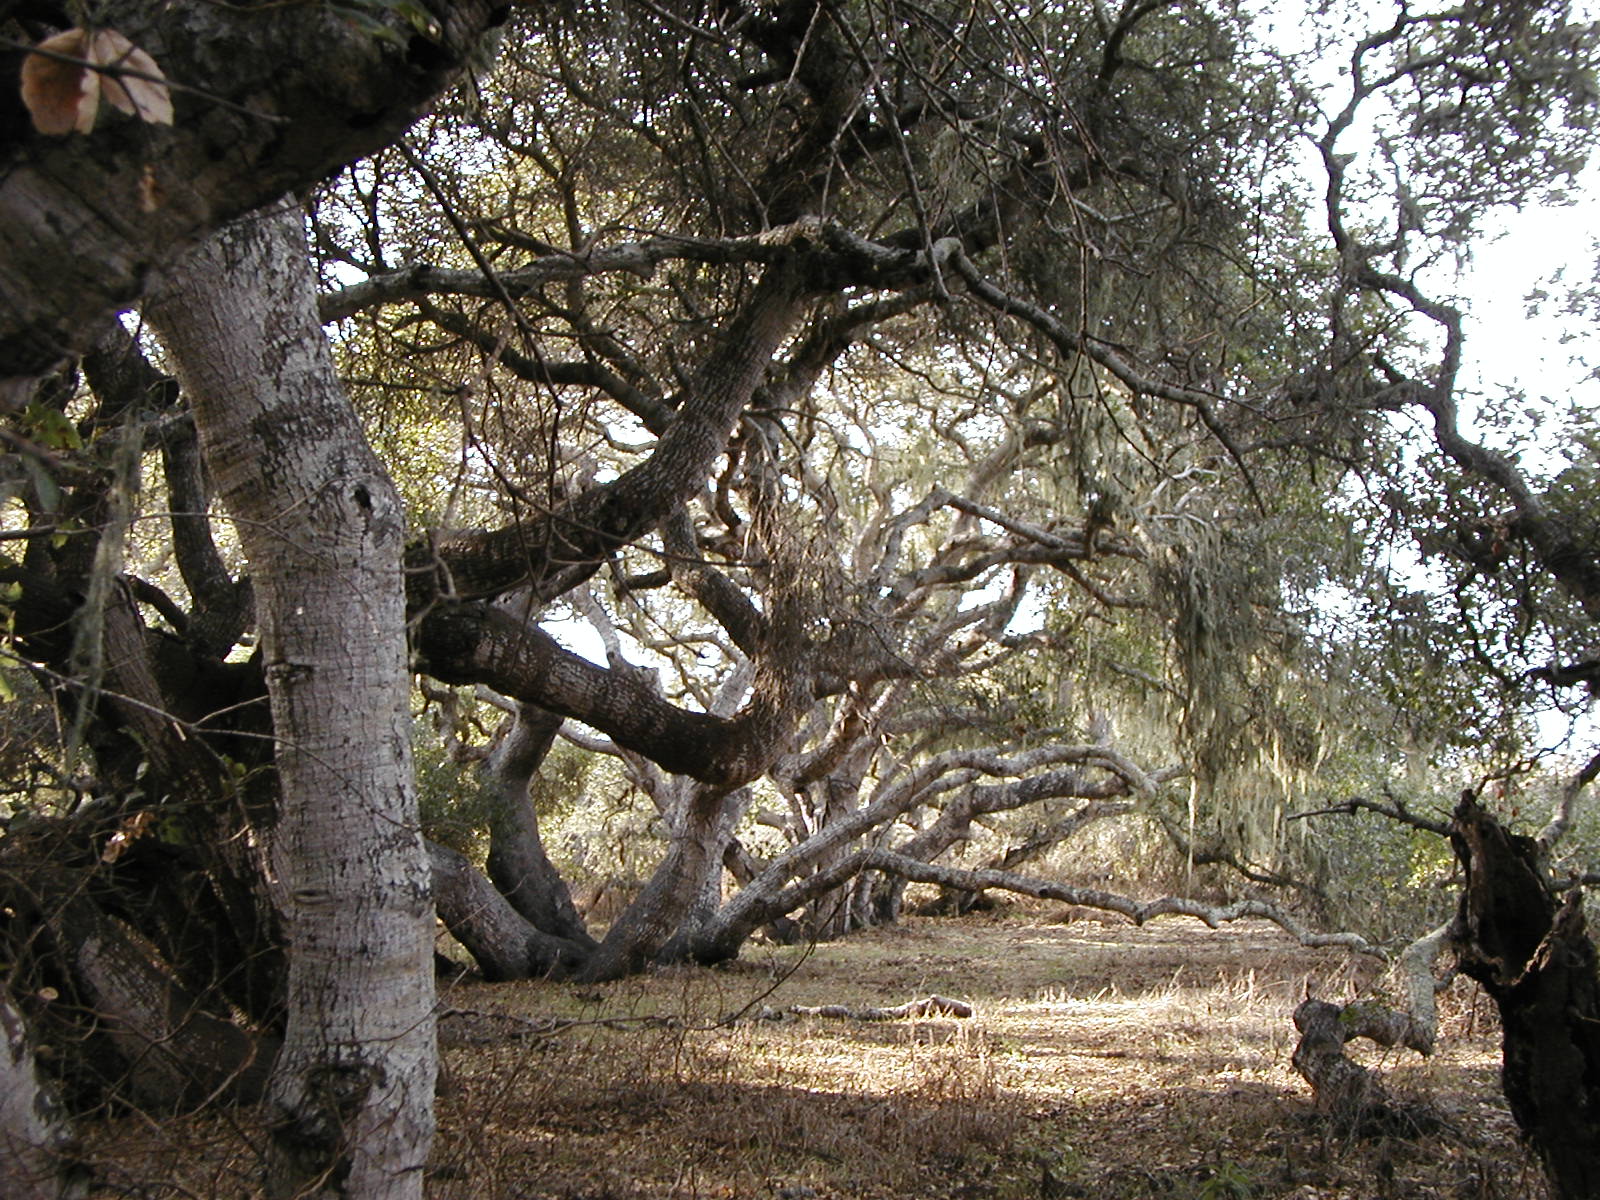 Gnarly oak trees